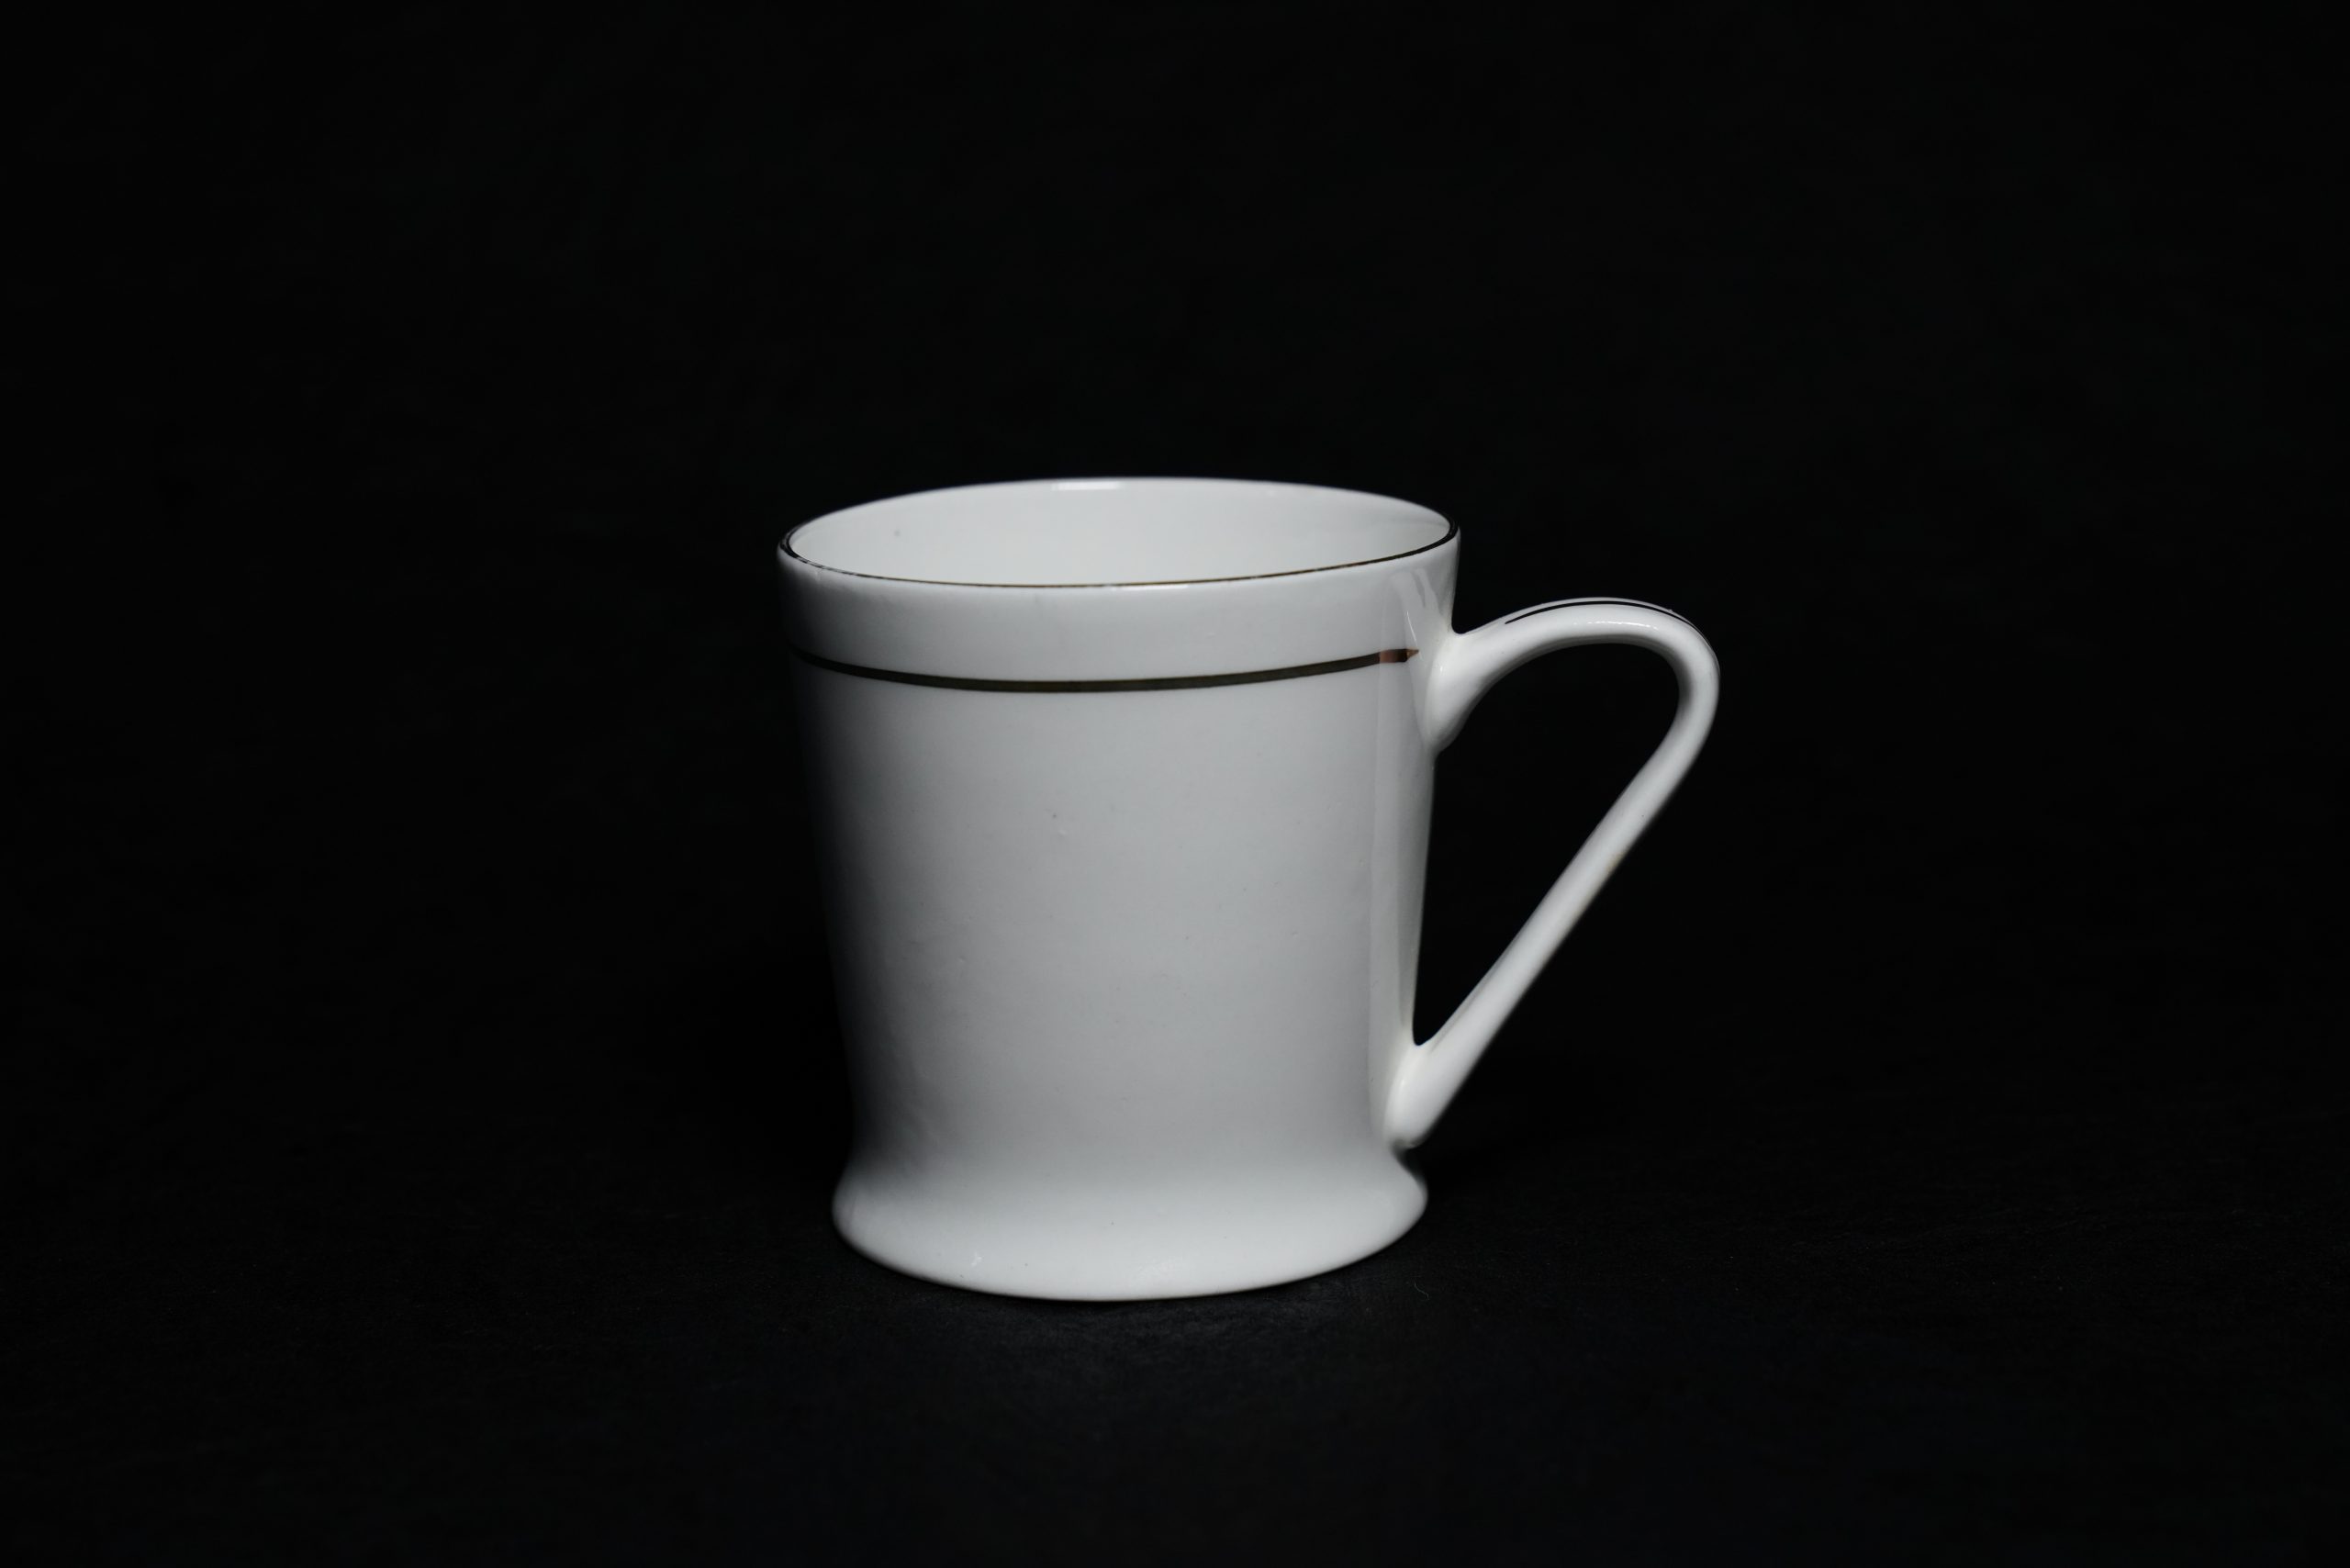 White tea cup